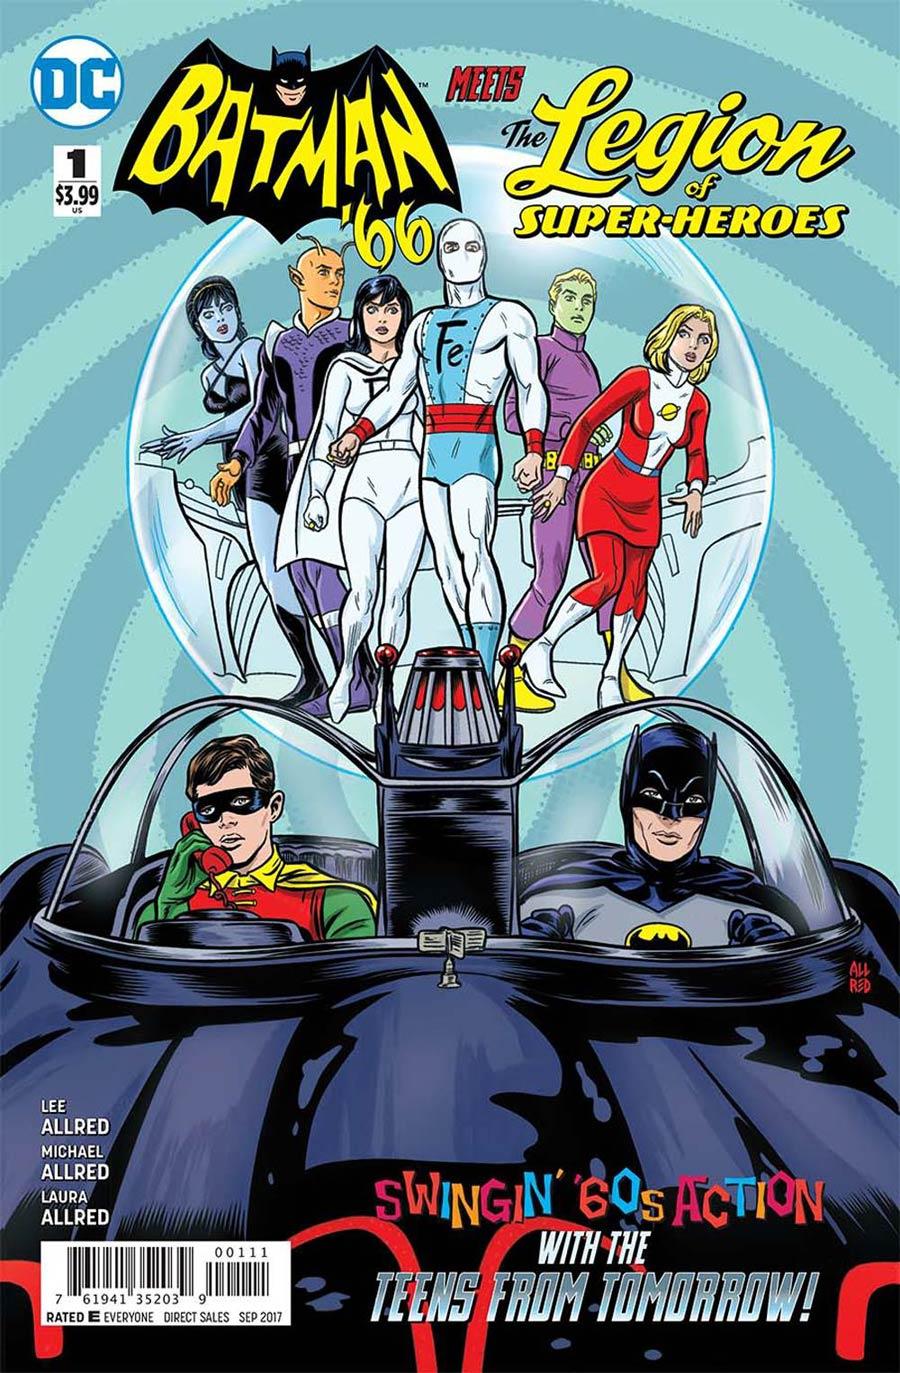 Batman 66 Meets The Legion Of Super-Heroes Vol. 1 #1